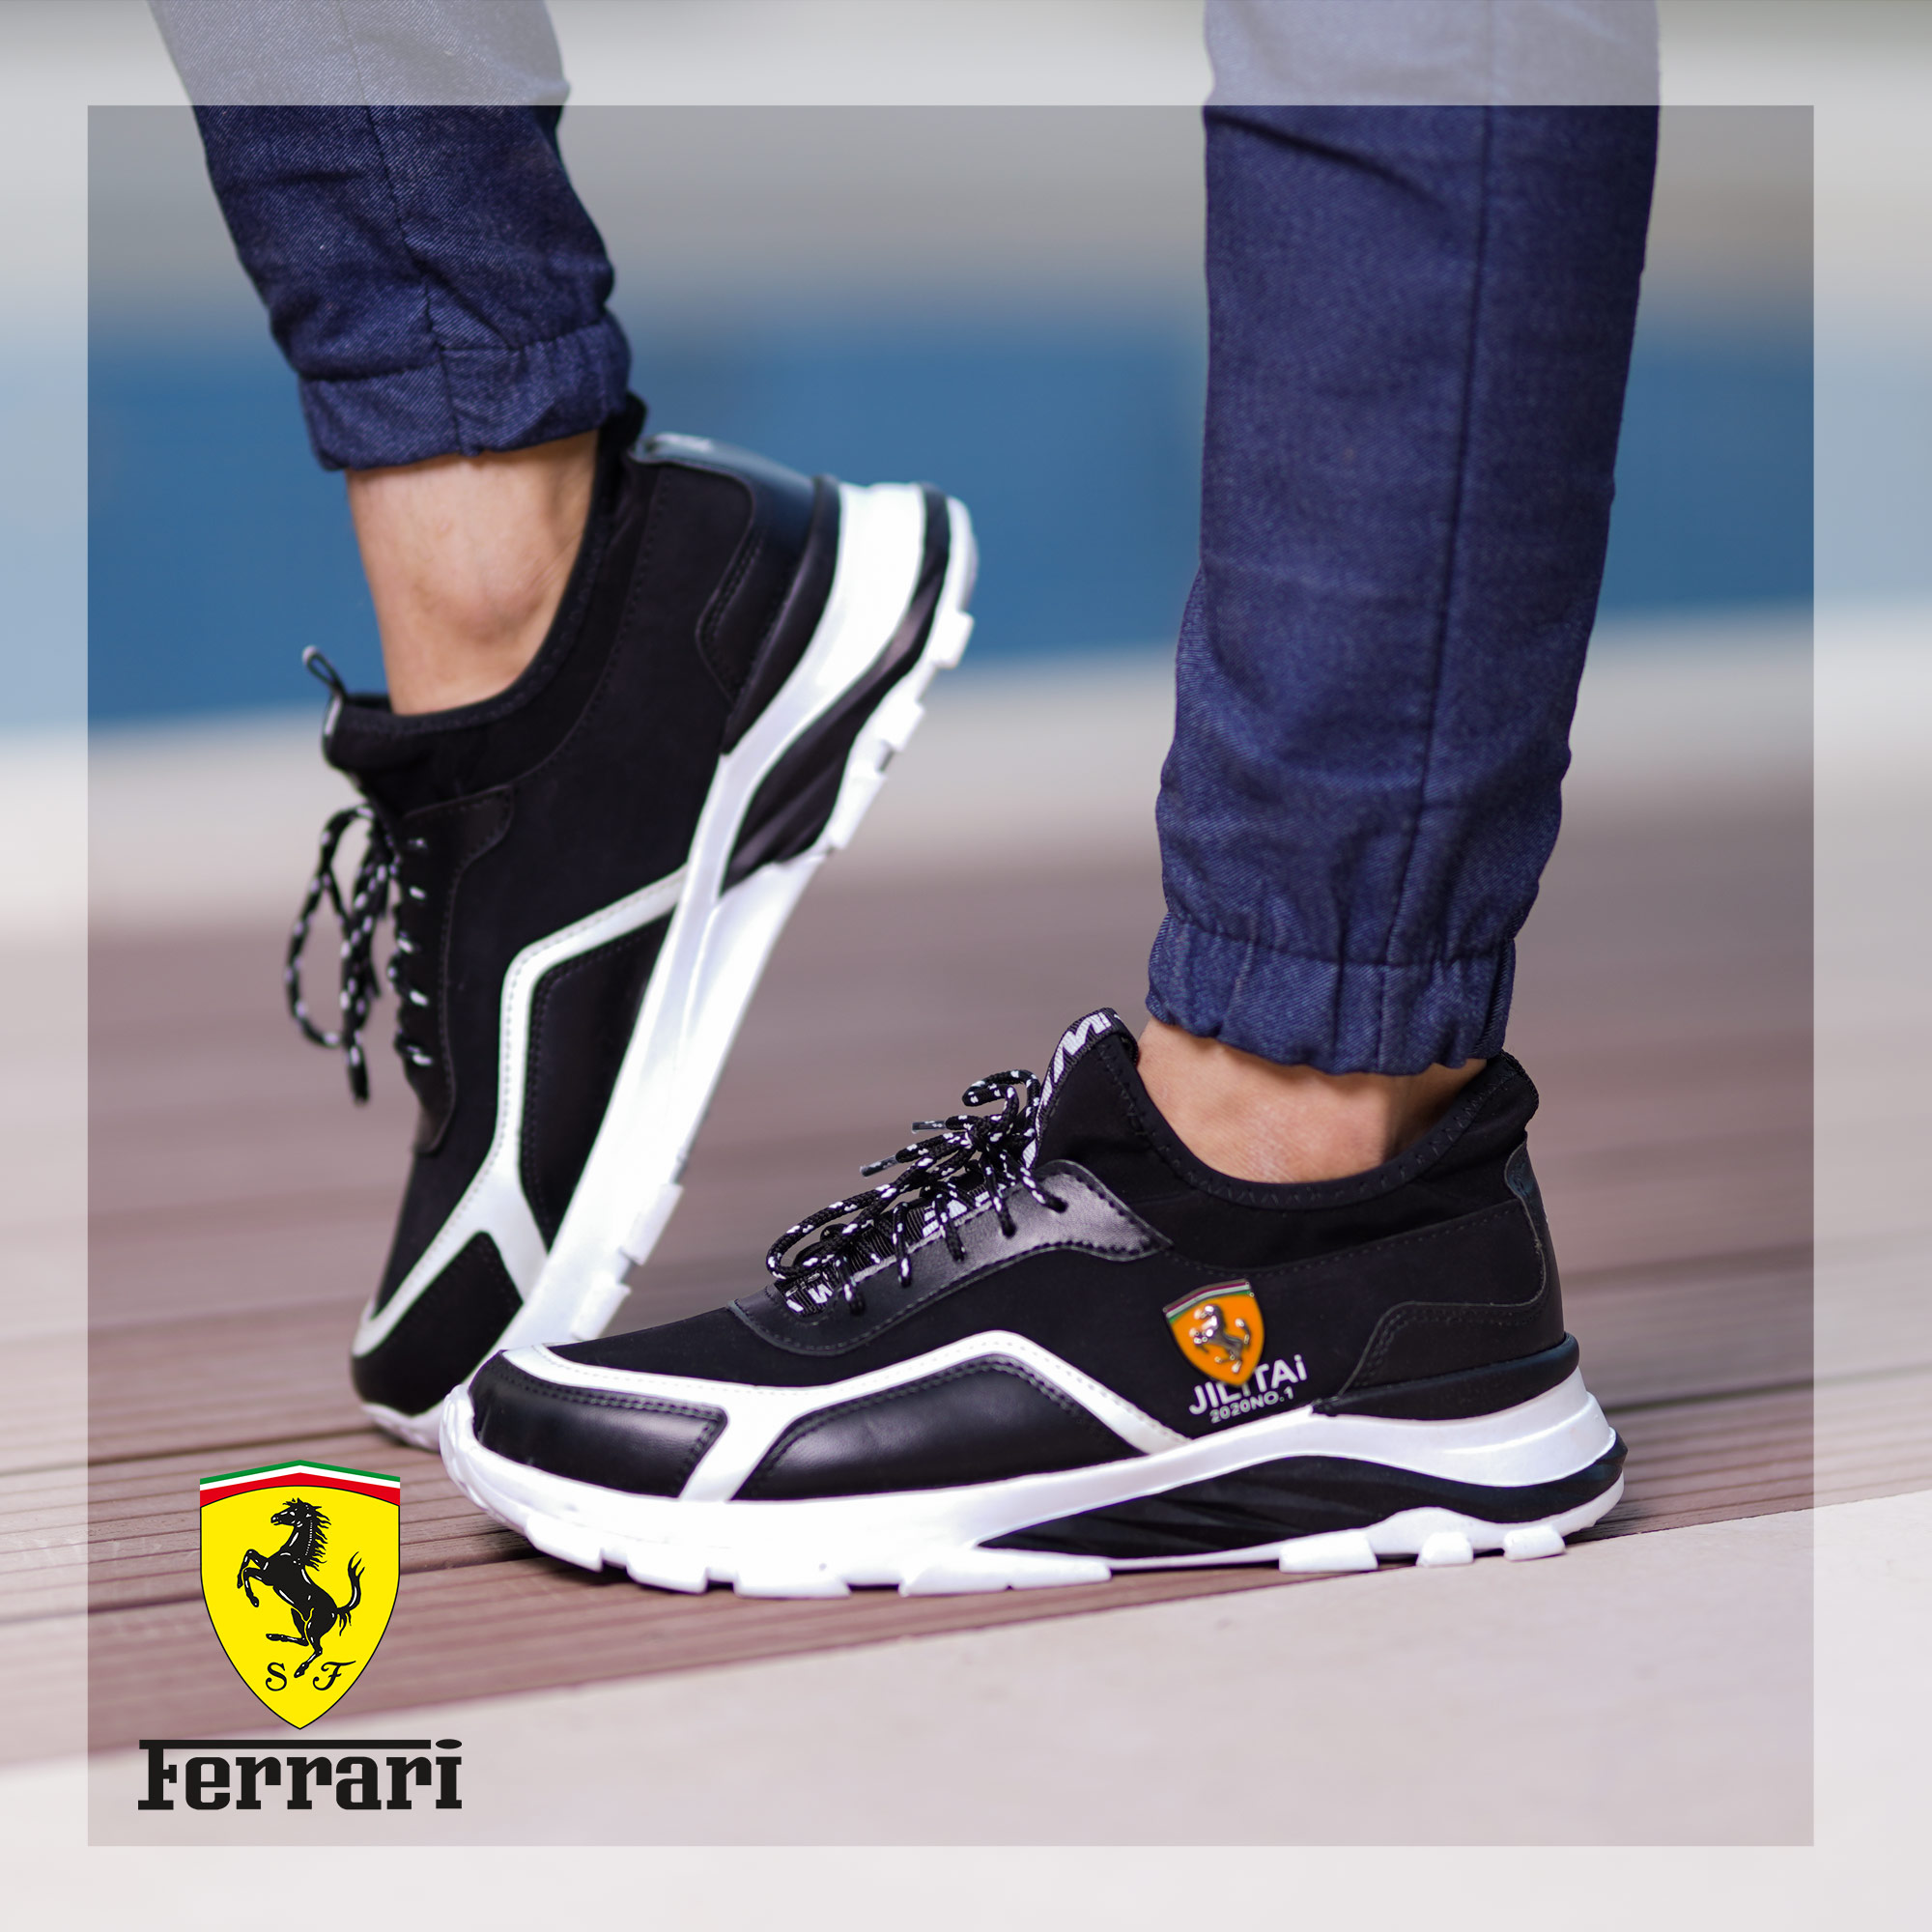 عکس محصول کفش مردانه Ferrari مدل JILITAi(مشکی و سفید)